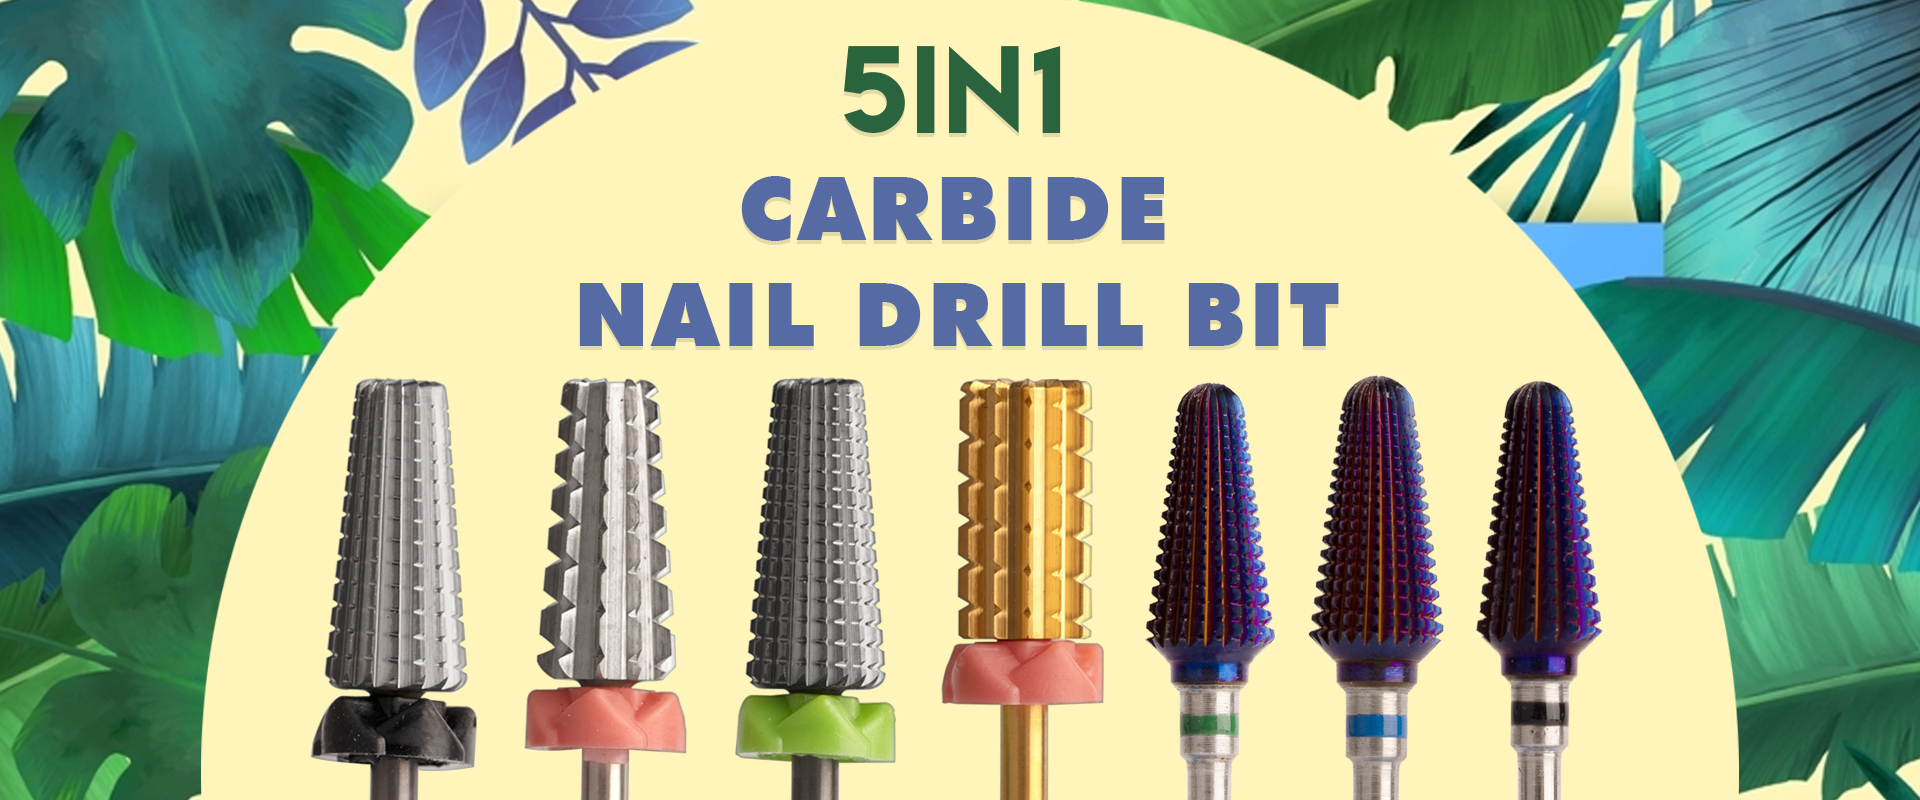 nail drill bit 5 in 1